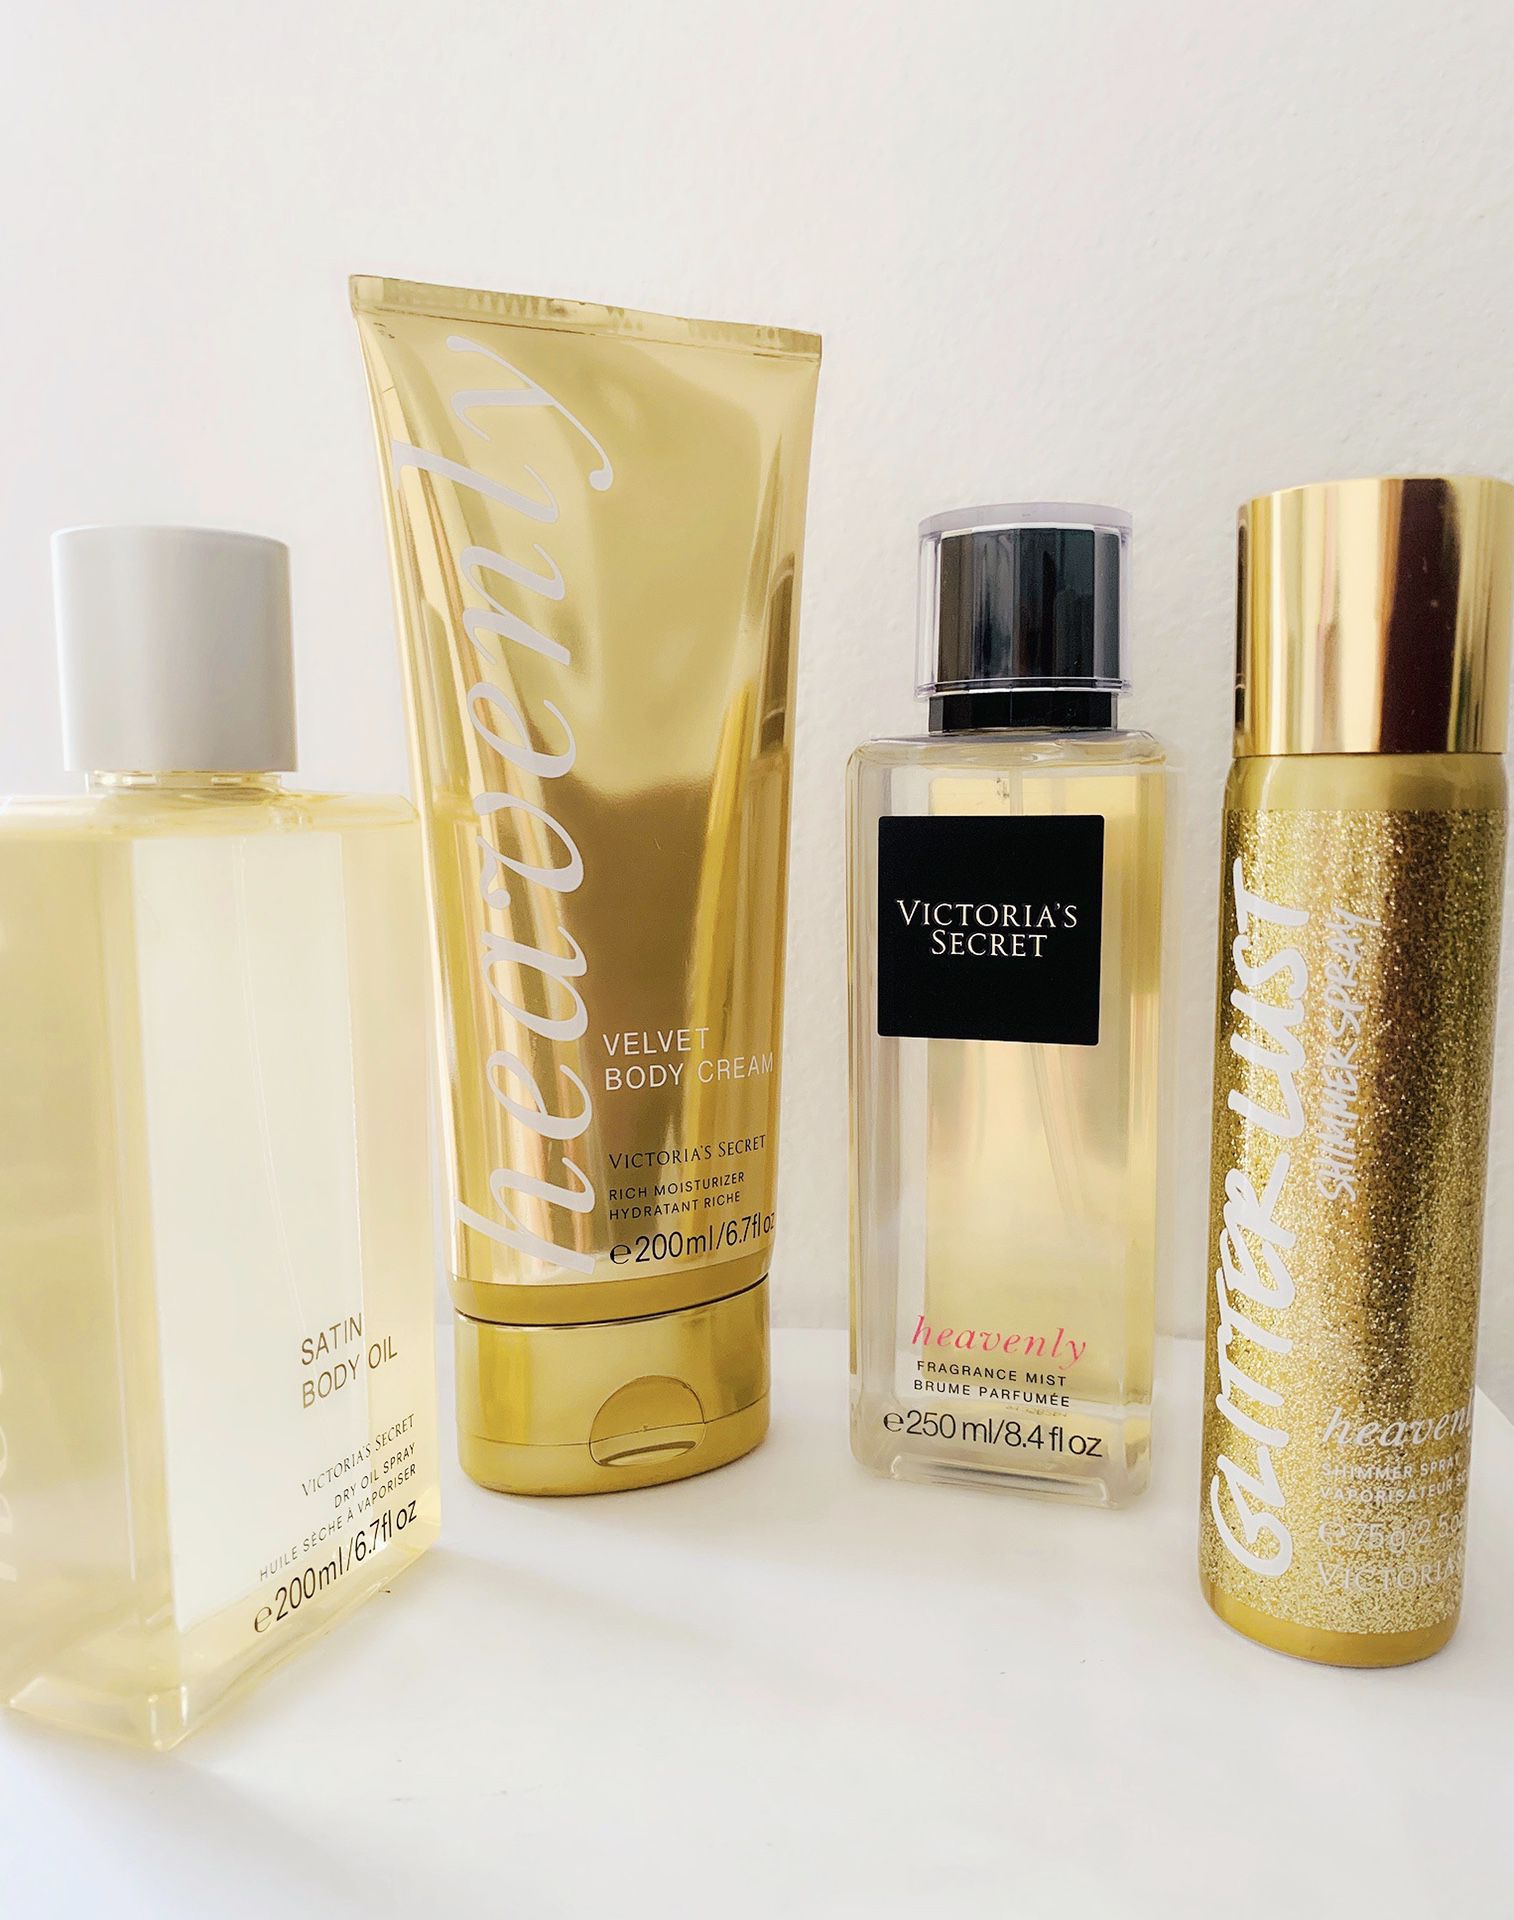 NEW Victoria’s Secret HEAVENLY Fragrance, Velvet Body Cream, Body Oil & Glitter Shimmer